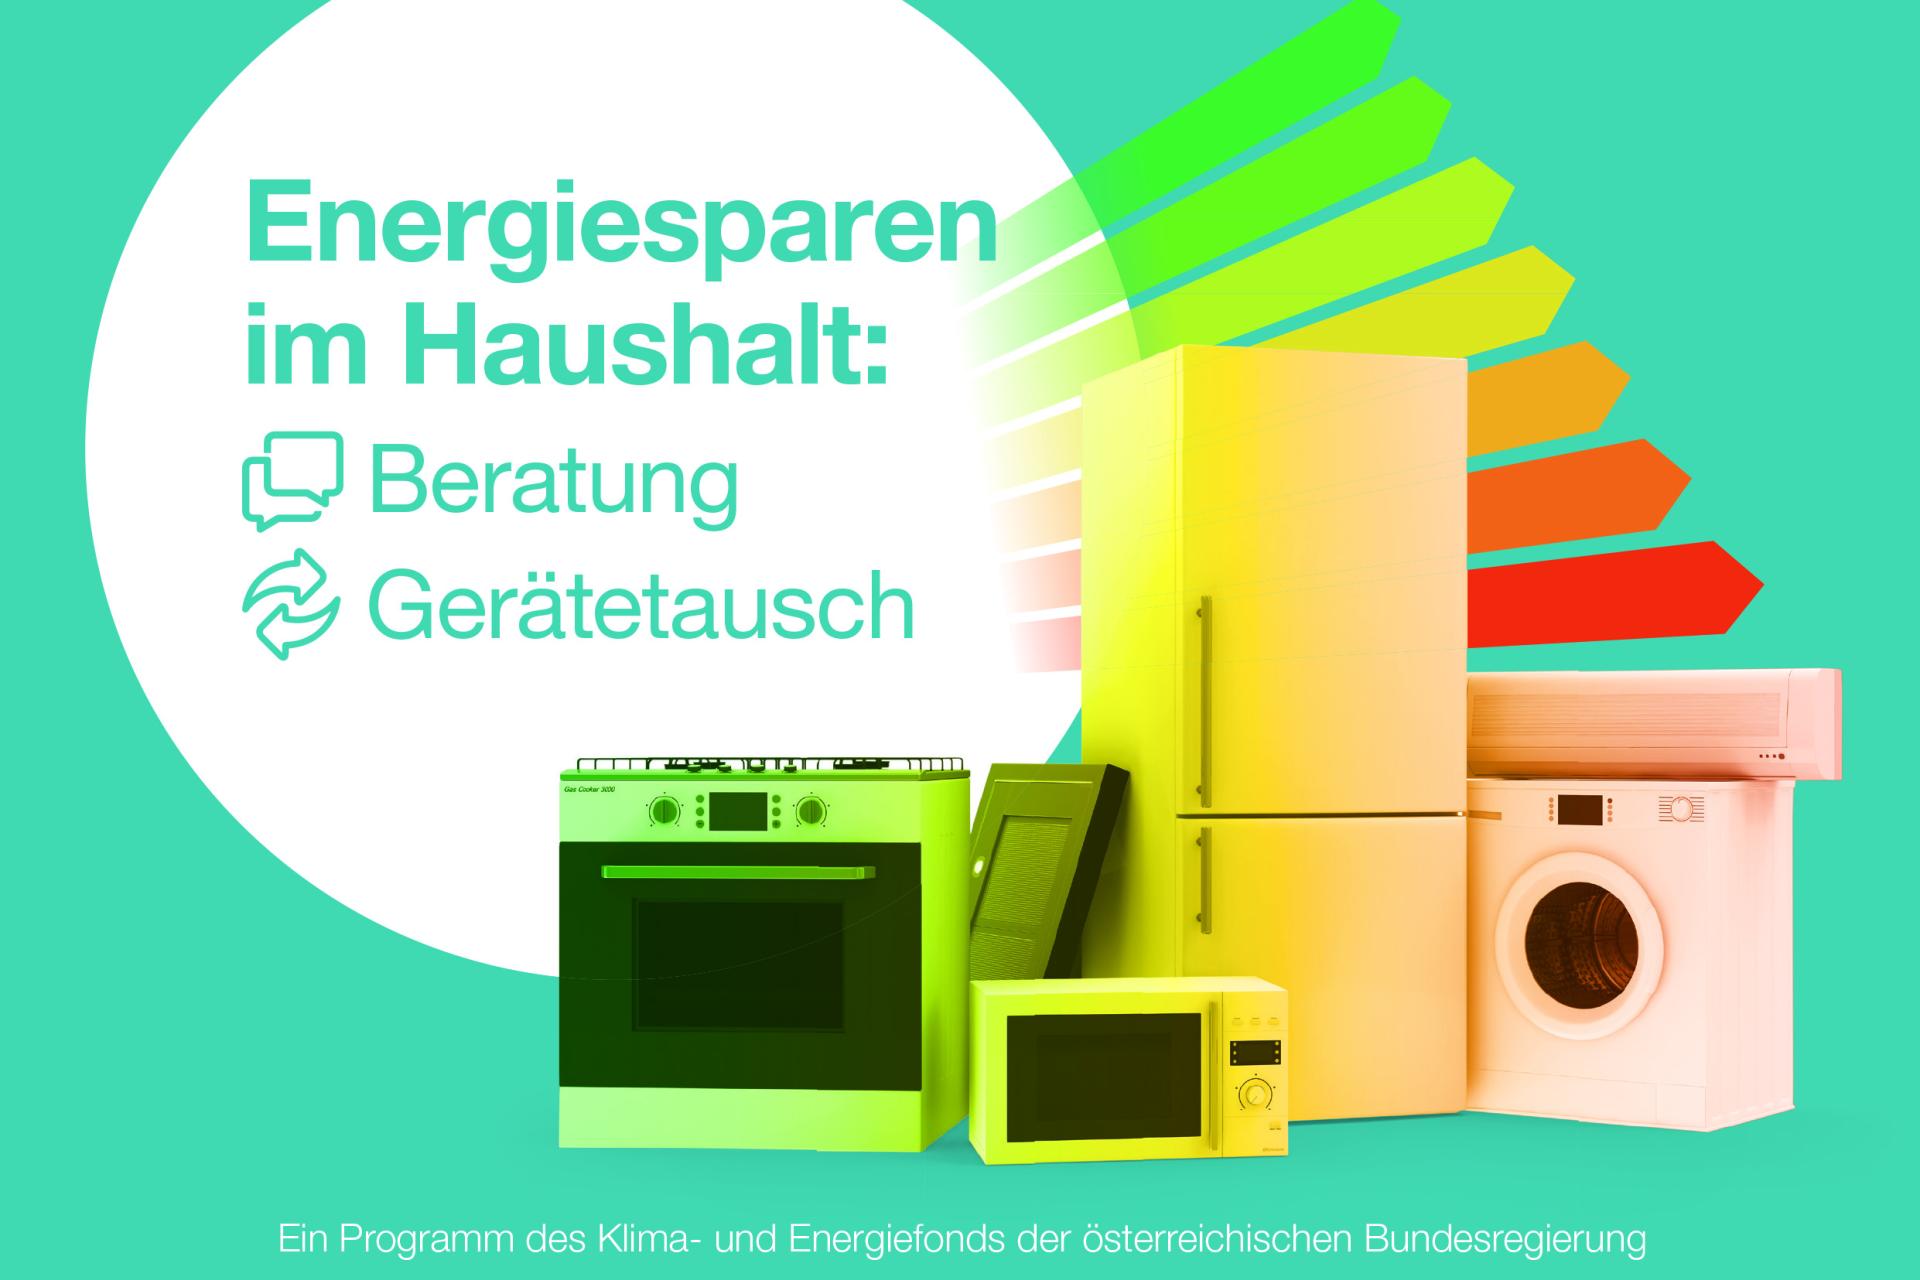 Werbeplakat Energiesparen im Haushalt: Beratung und Gerätetausch; Abbildung: verschiedene Elektrogeräte in bunten Farben